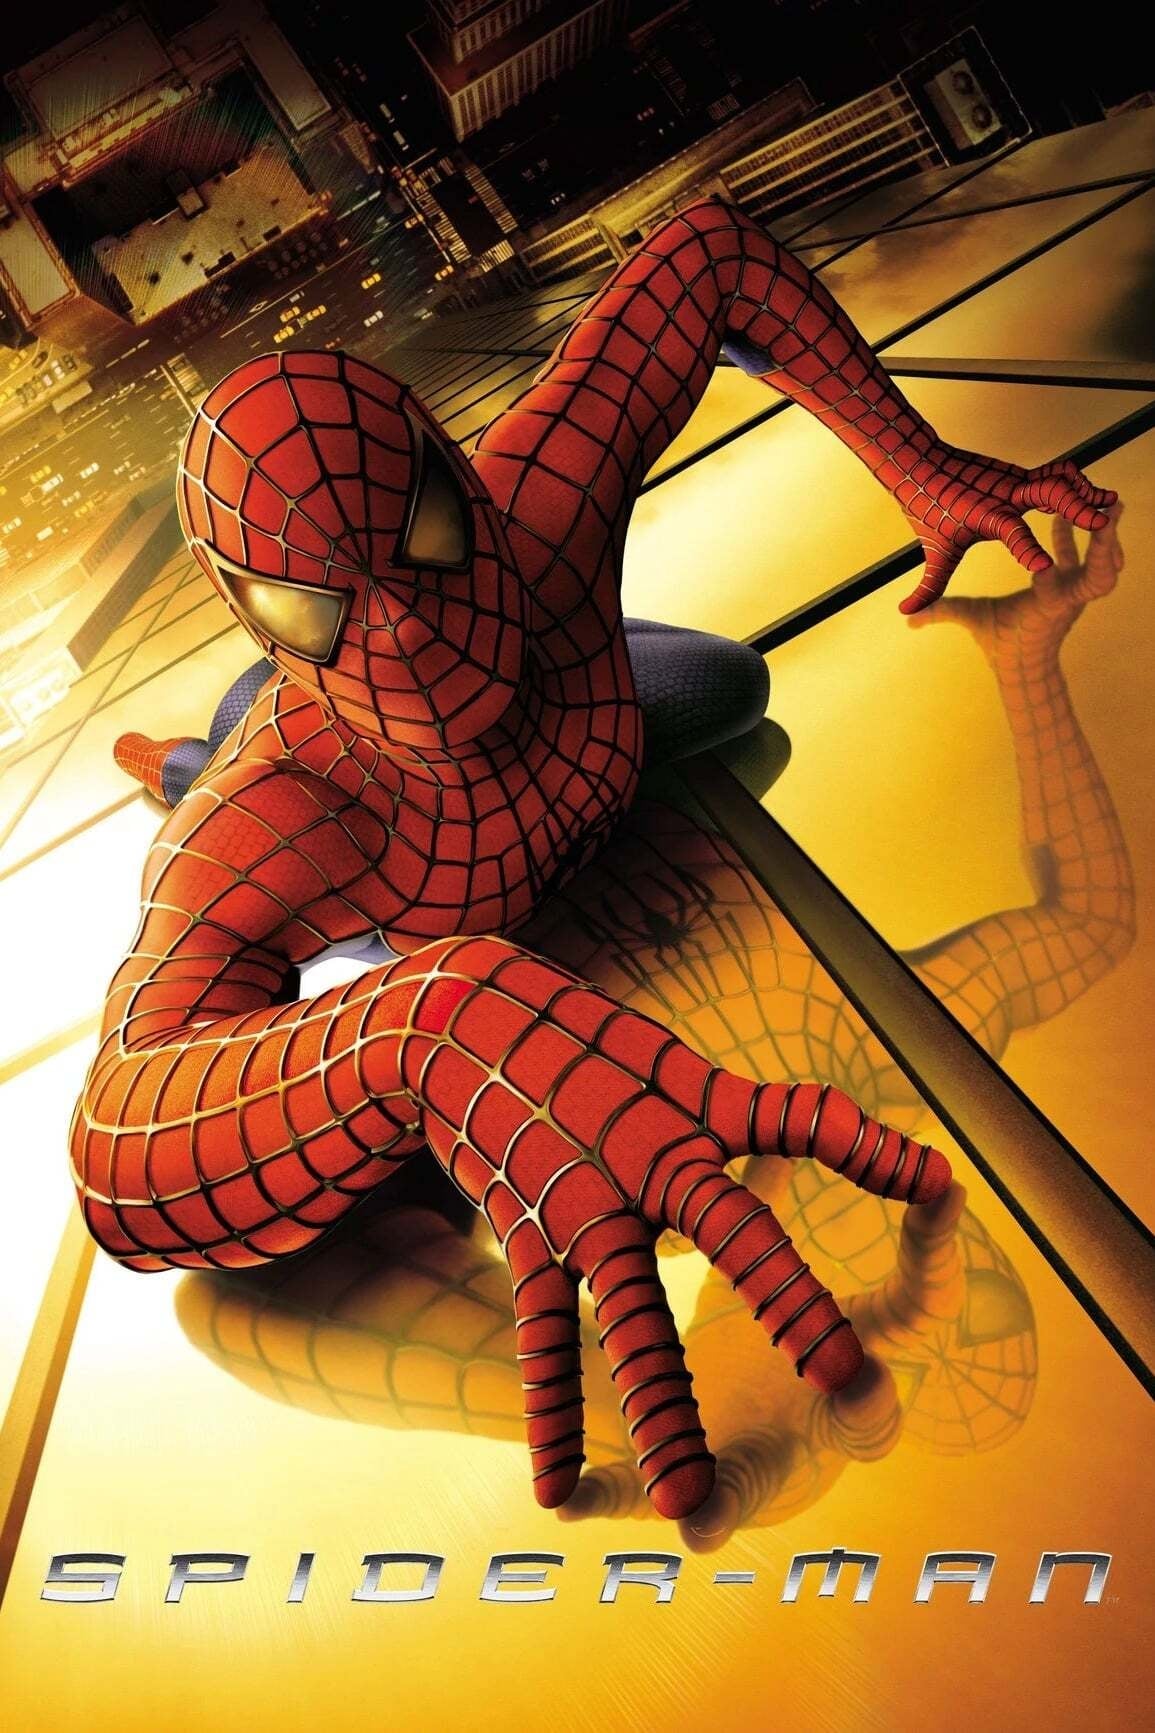 Spider-Man (2002) Ganzer Film Deutsch